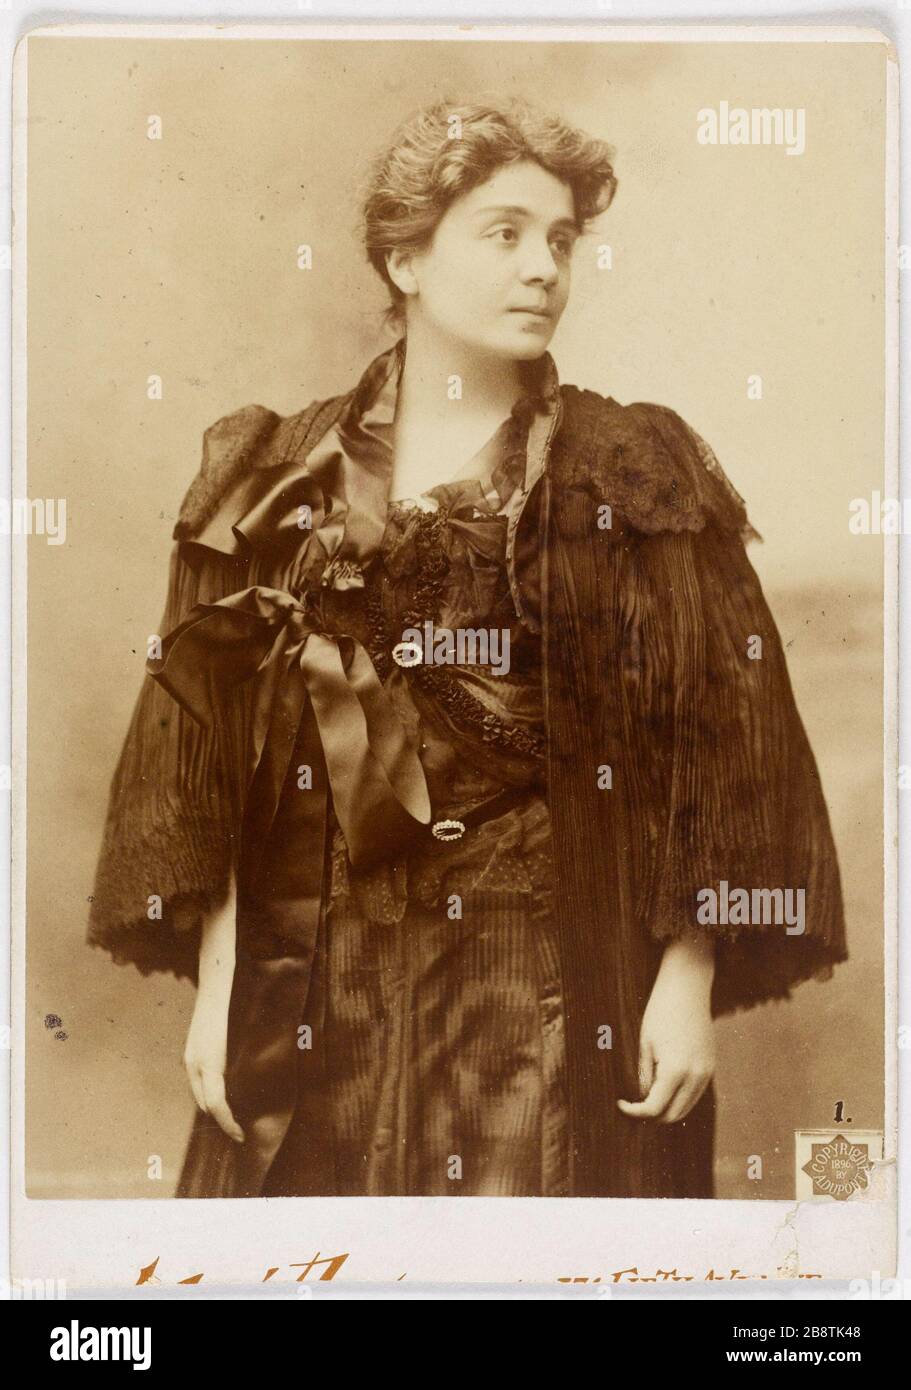 Portrait of Eleonora Duse (1859-1924), Italian actress 'Eleonora Duse, (1859-1924), actrice italienne'. Photographie anonyme. Tirage sur papier albuminé. Paris, musée Carnavalet. Stock Photo